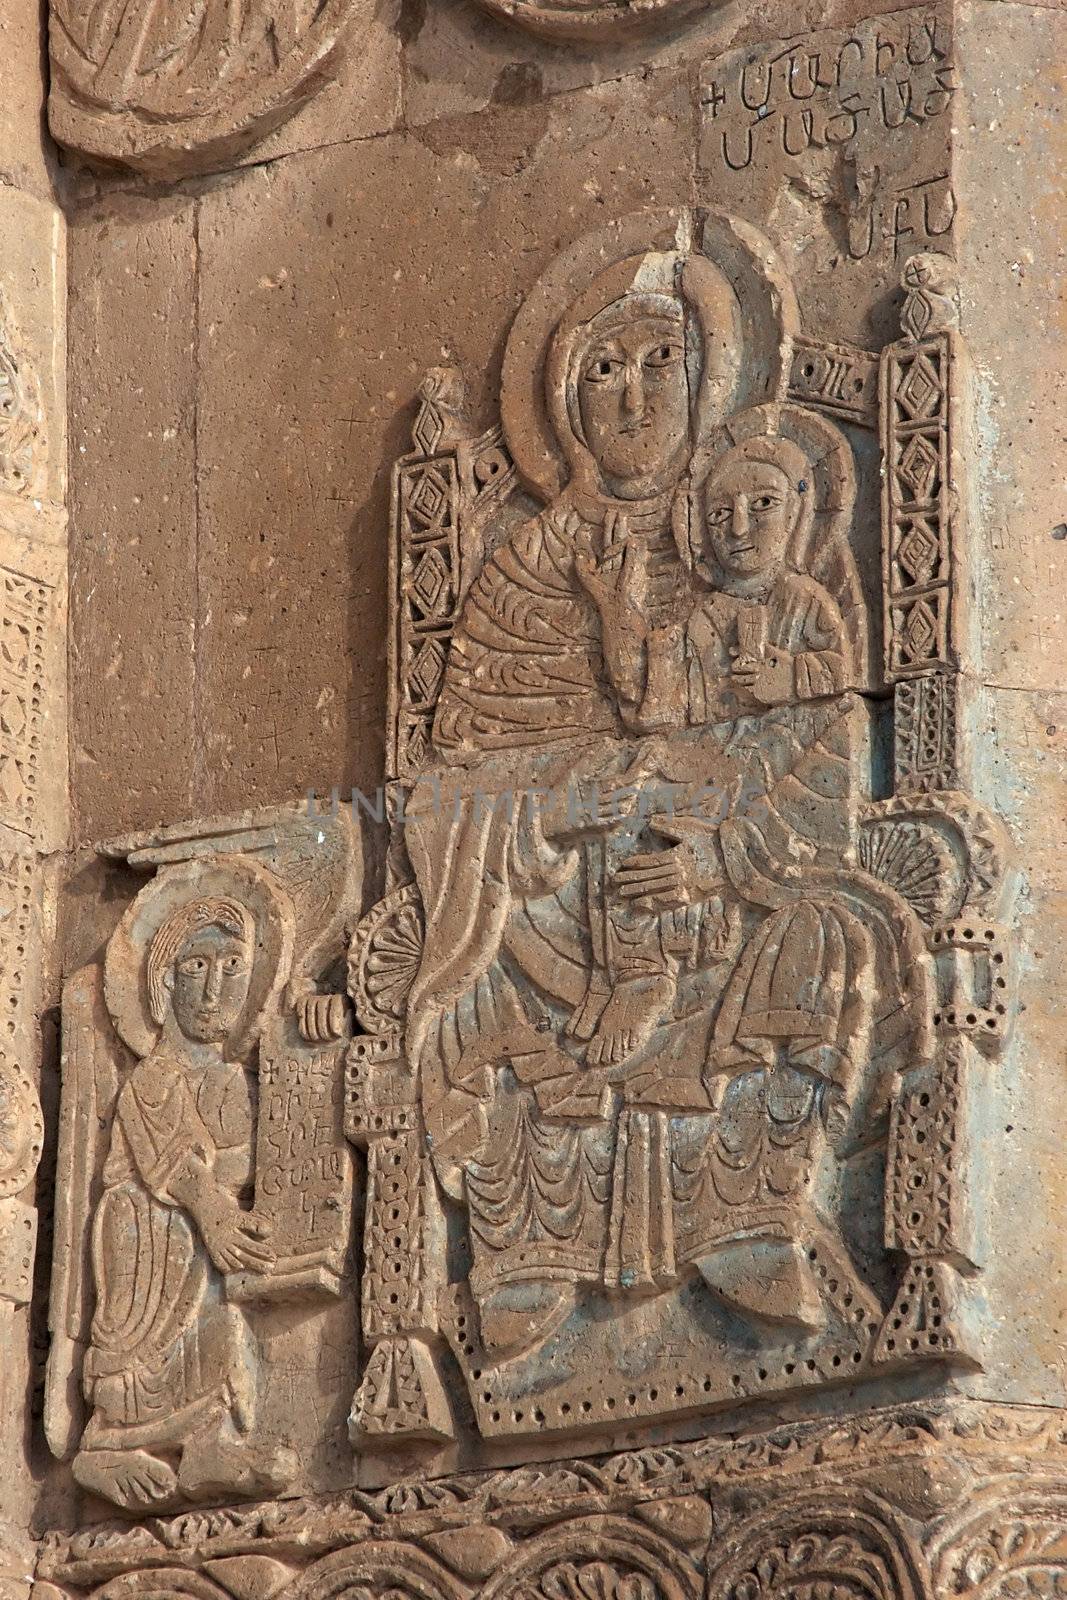 Carving on armenian church at Akdamar, Turkey by azotov